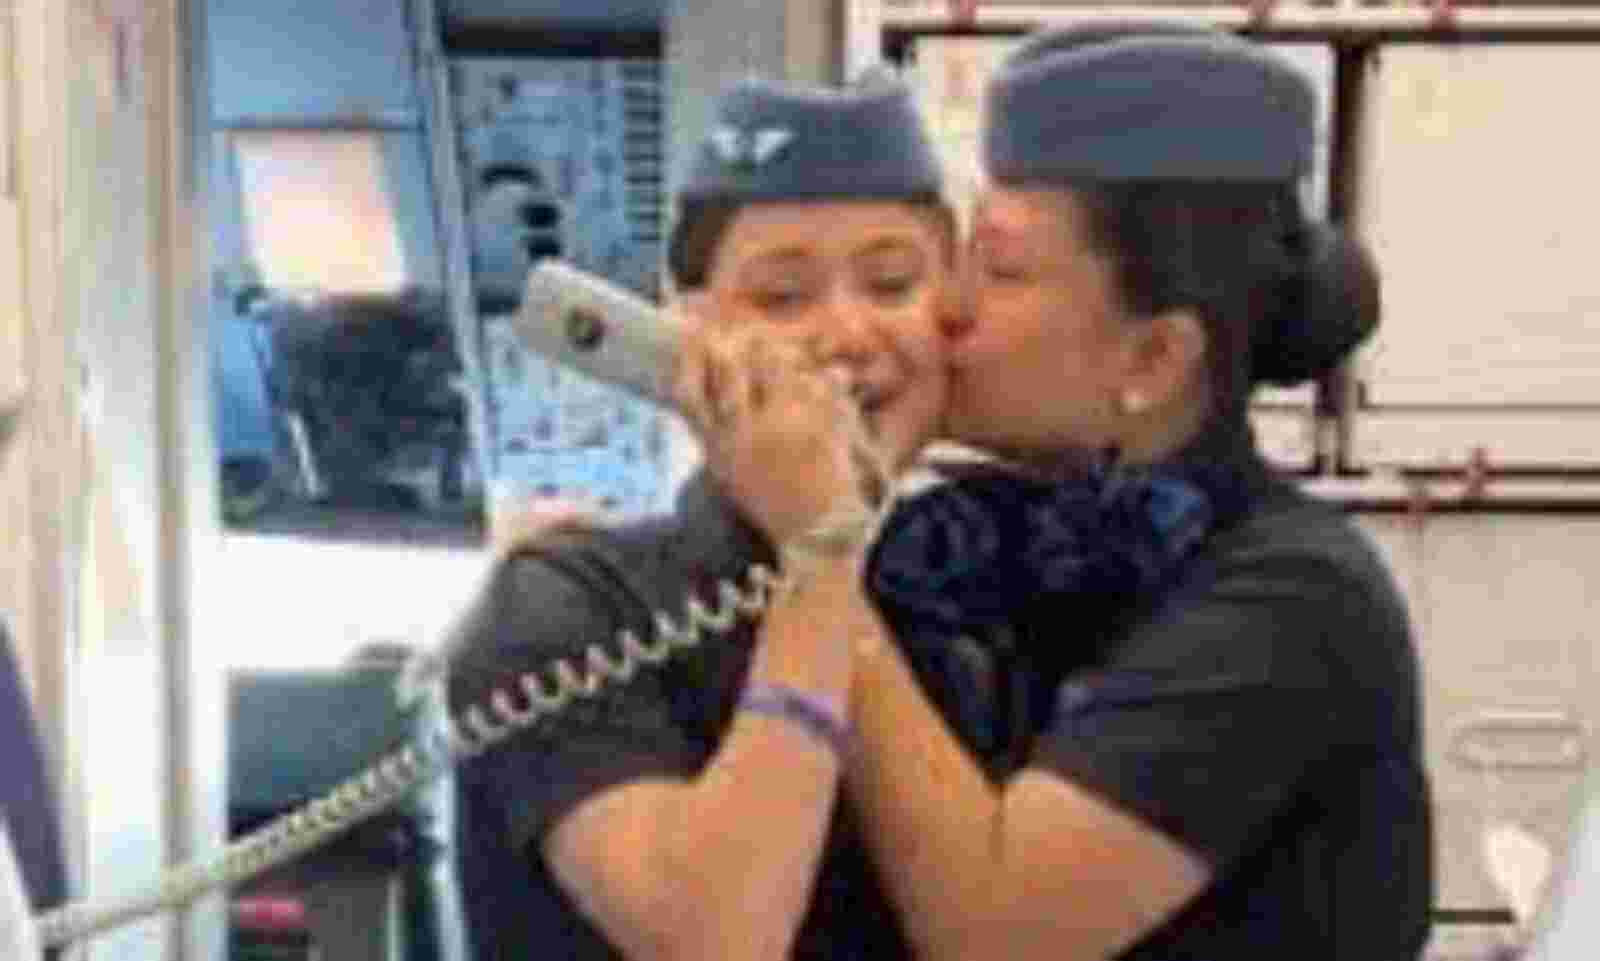 allie moren add air hostess kissing game photo